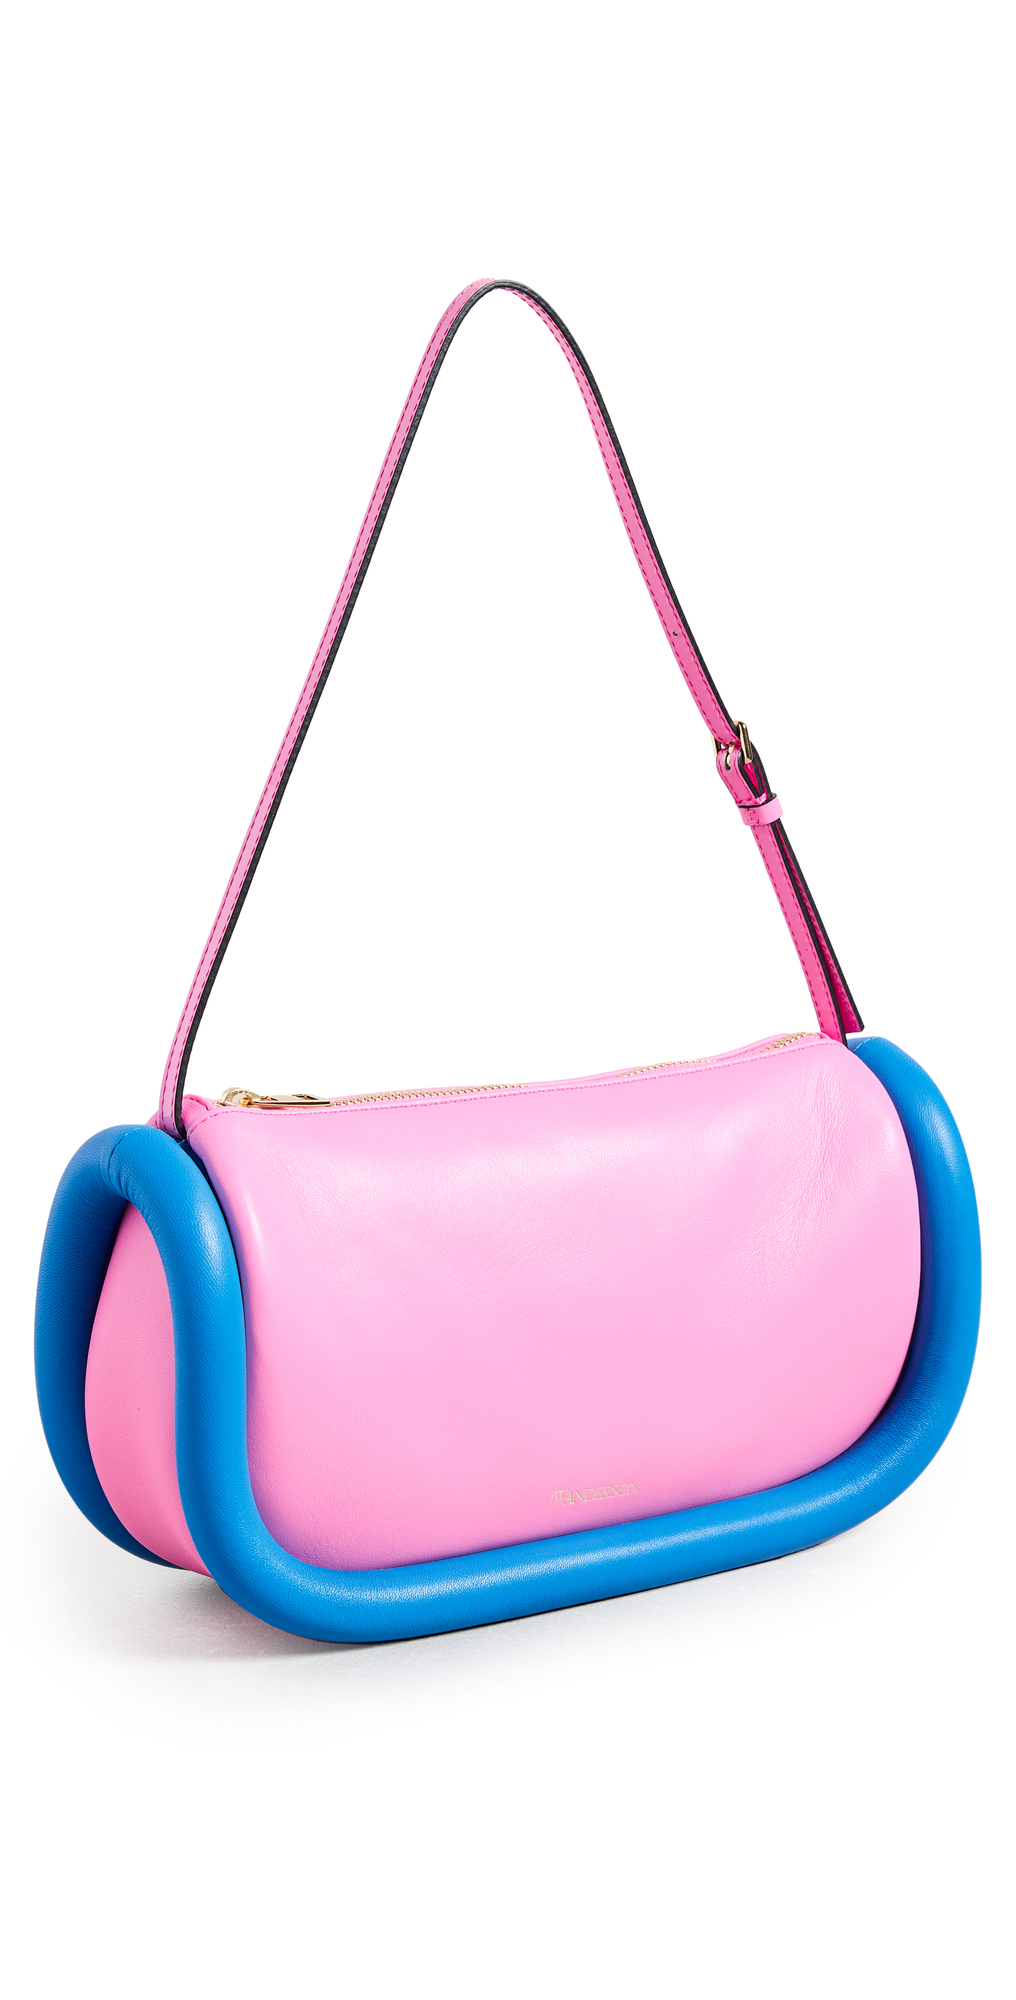 JW Anderson The Bumper Baguette Shoulder Bag in blue / pink